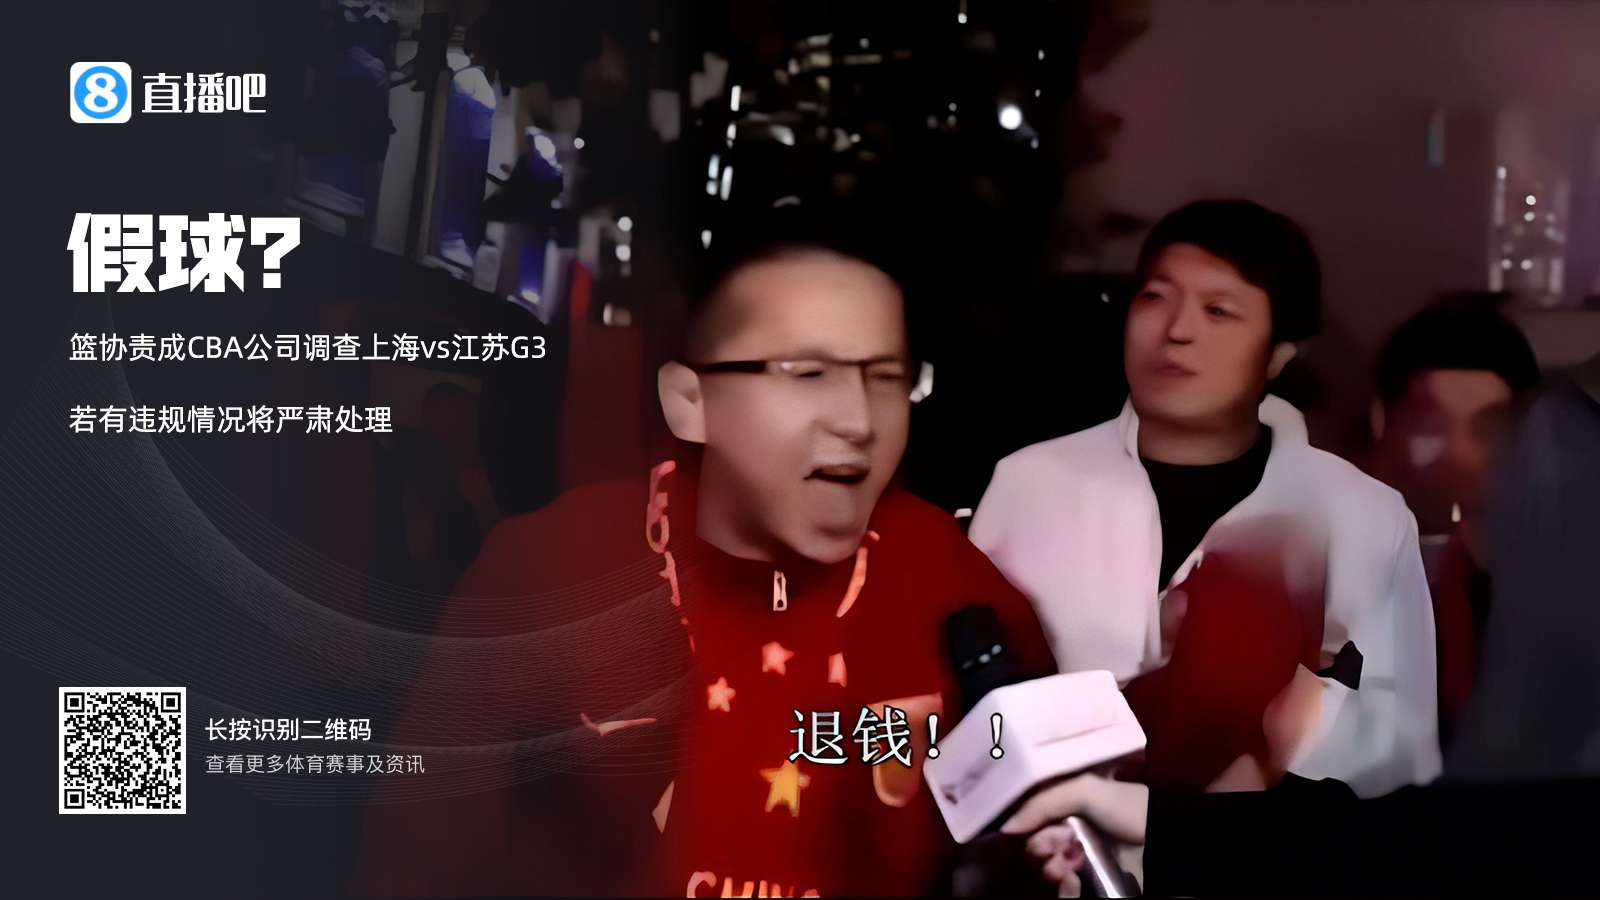 篮协：已责成CBA公司调查上海vs江苏G3 若有违规情况将严肃处理